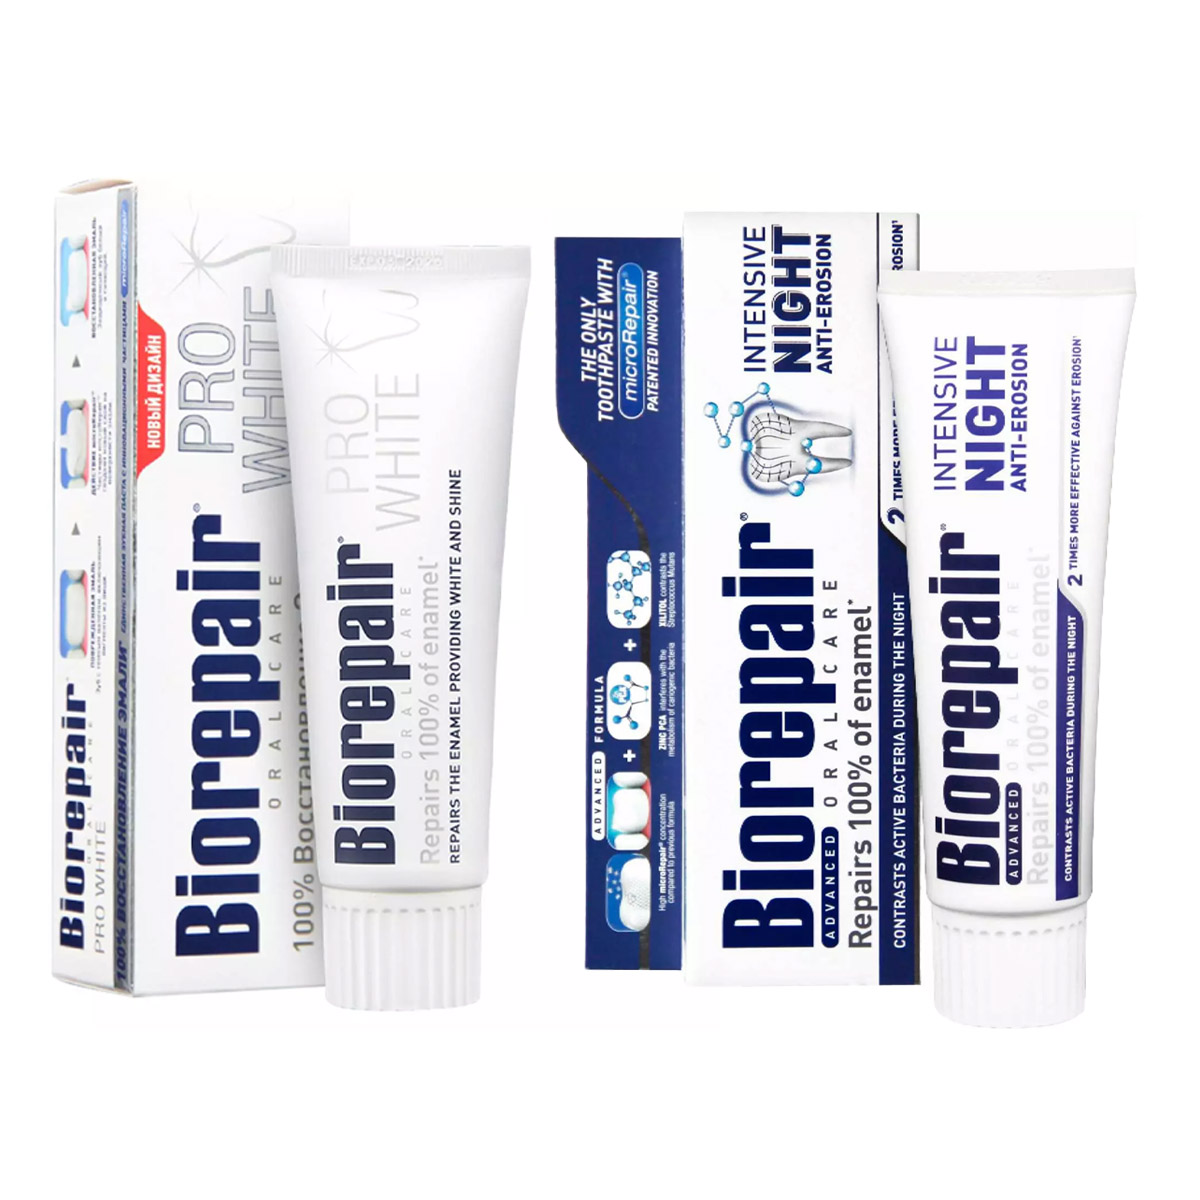 Biorepair Набор зубных паст для сохранения белизны, 2х75 мл (Biorepair, Отбеливание и лечение) набор зубных паст biorepair ns0001